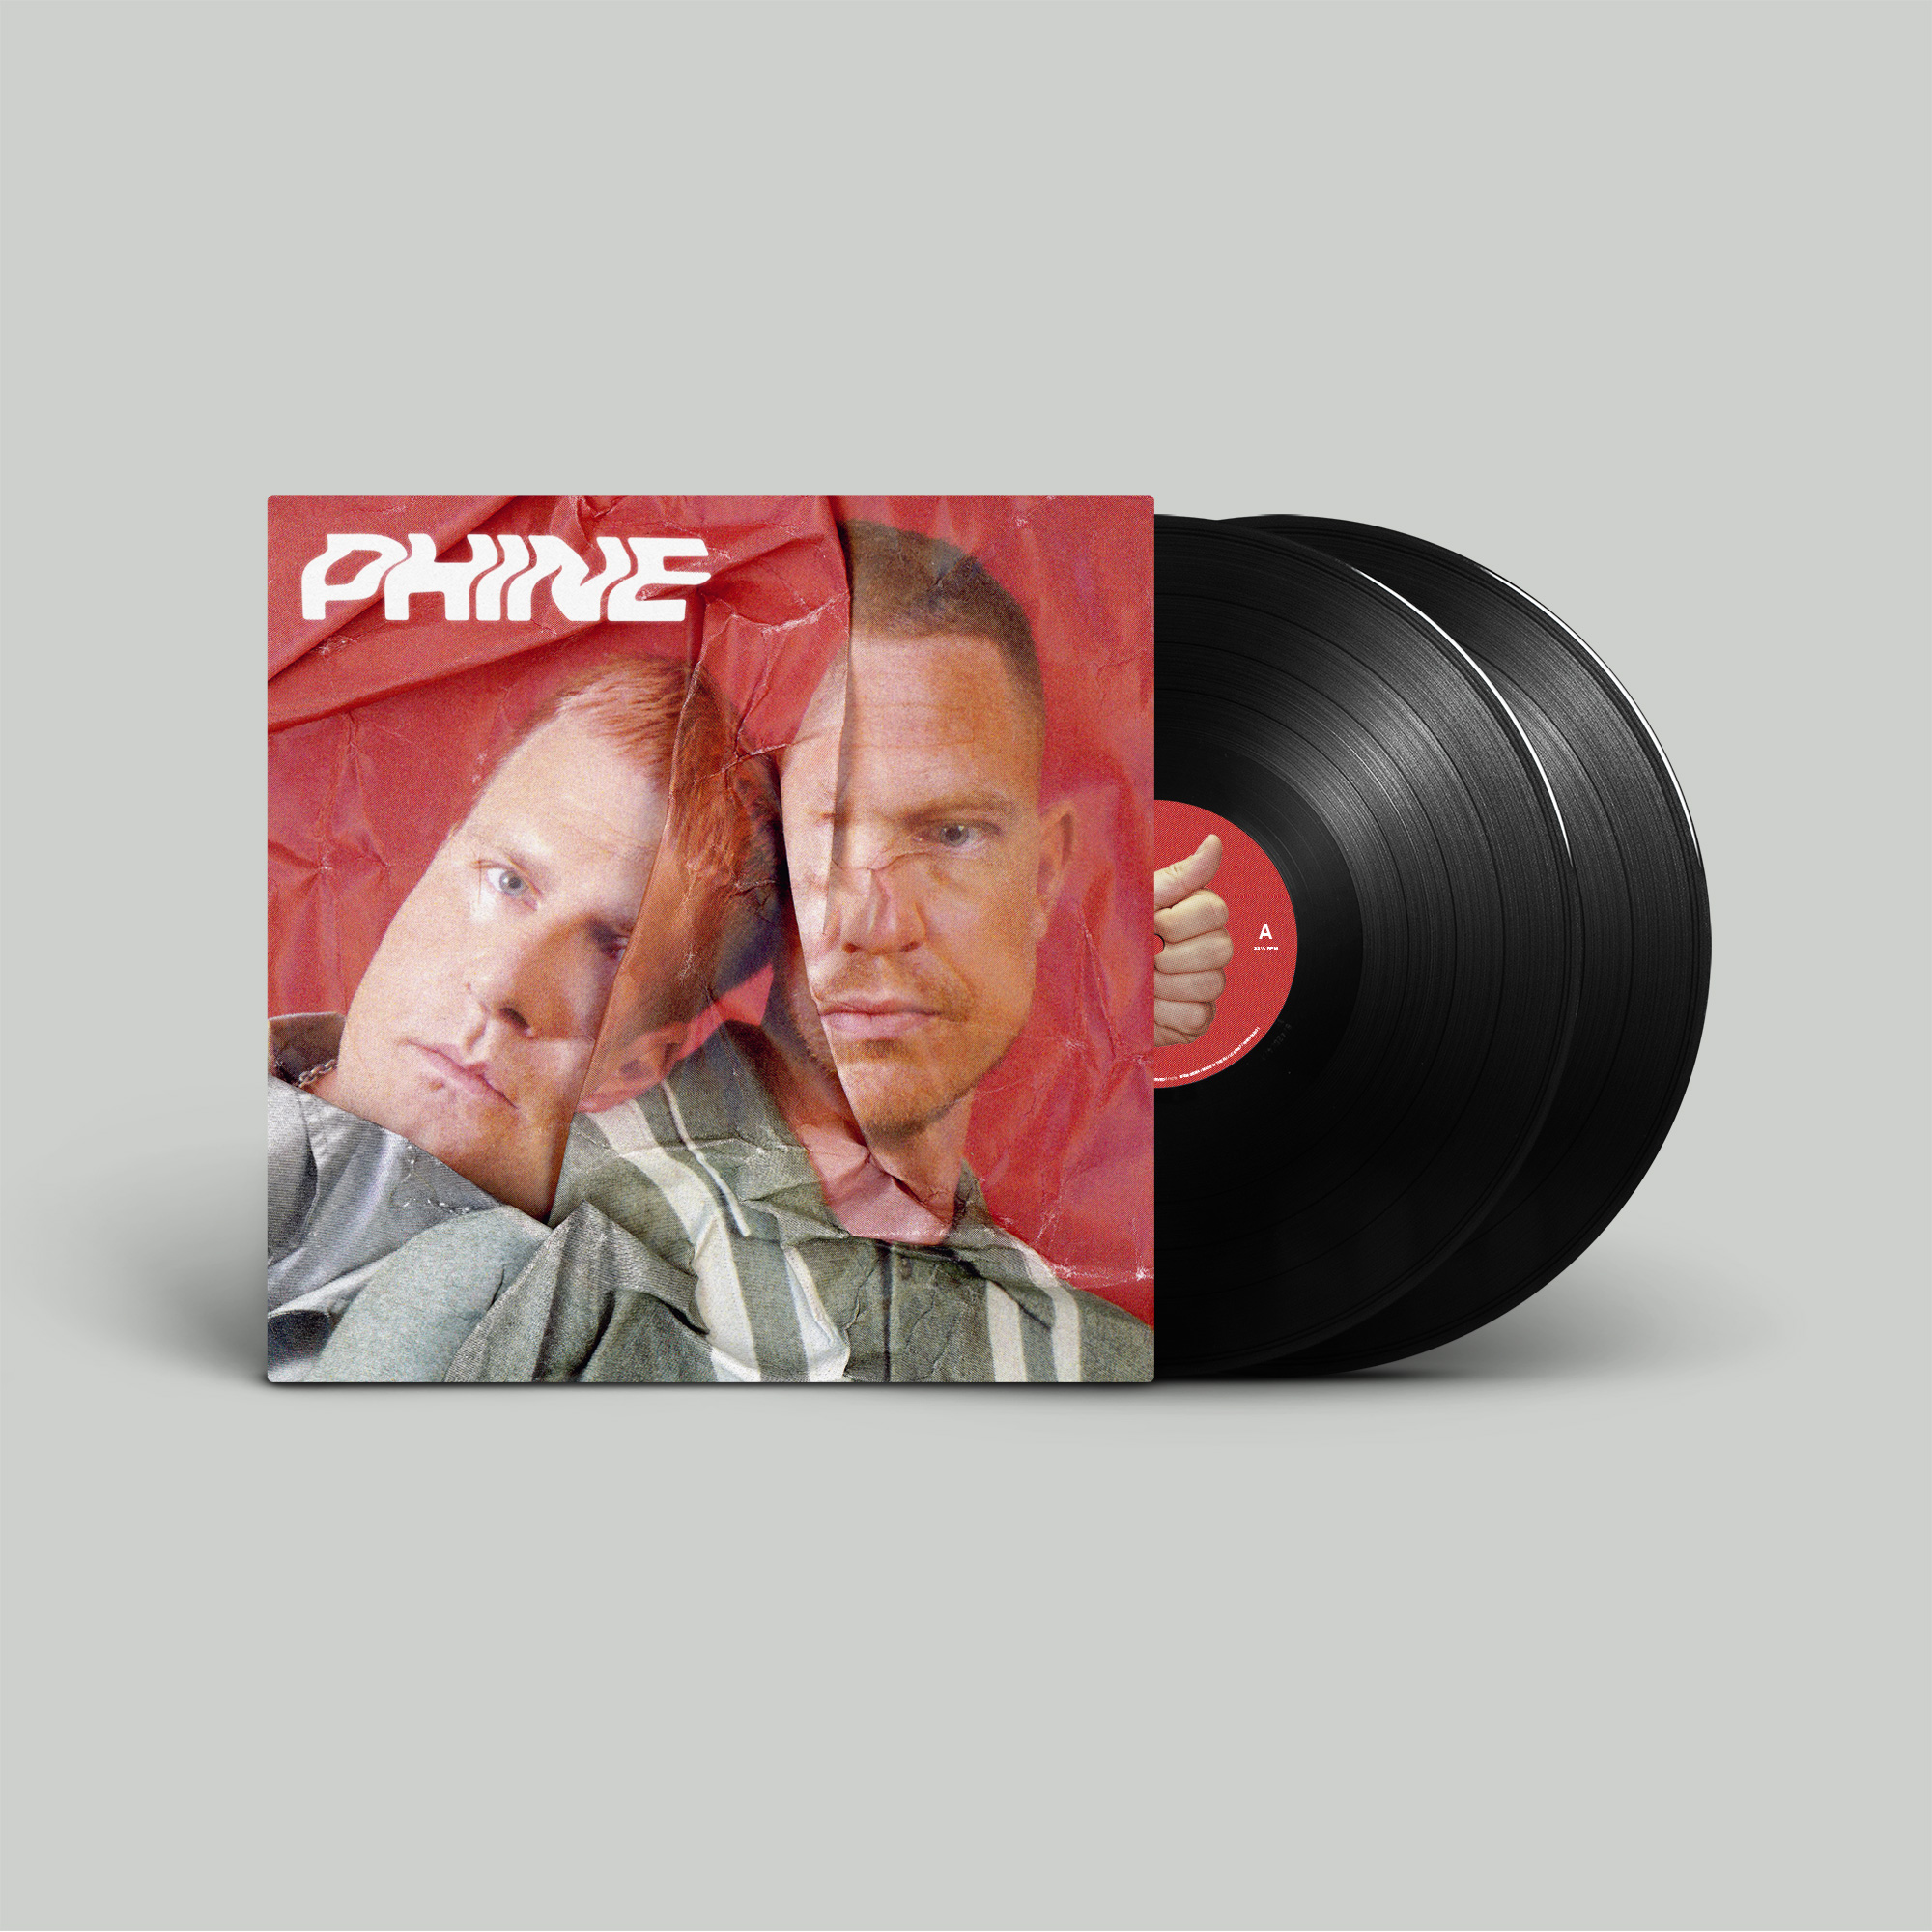 Phlake Phine Vinyl lp